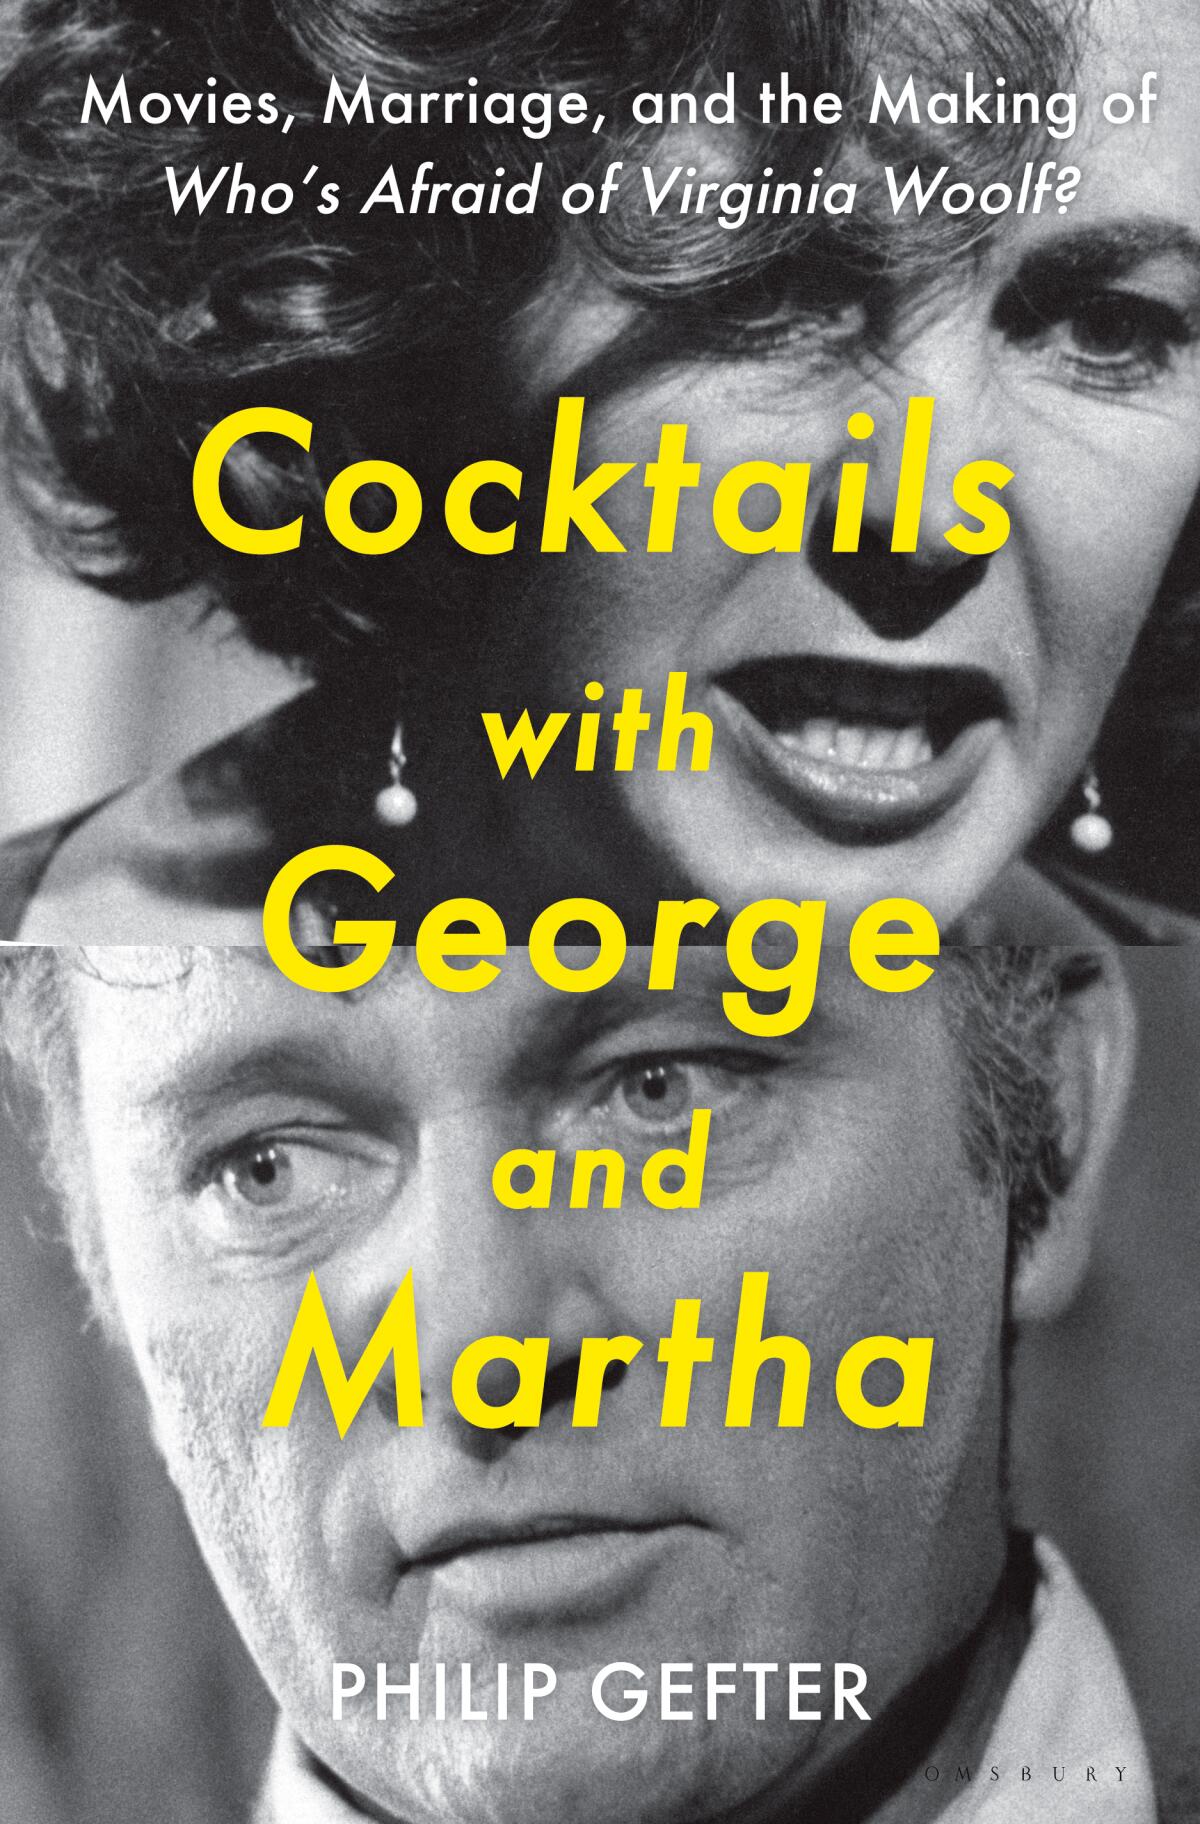 Das Buchcover von "Cocktails mit George und Martha" von Philip Gefter.